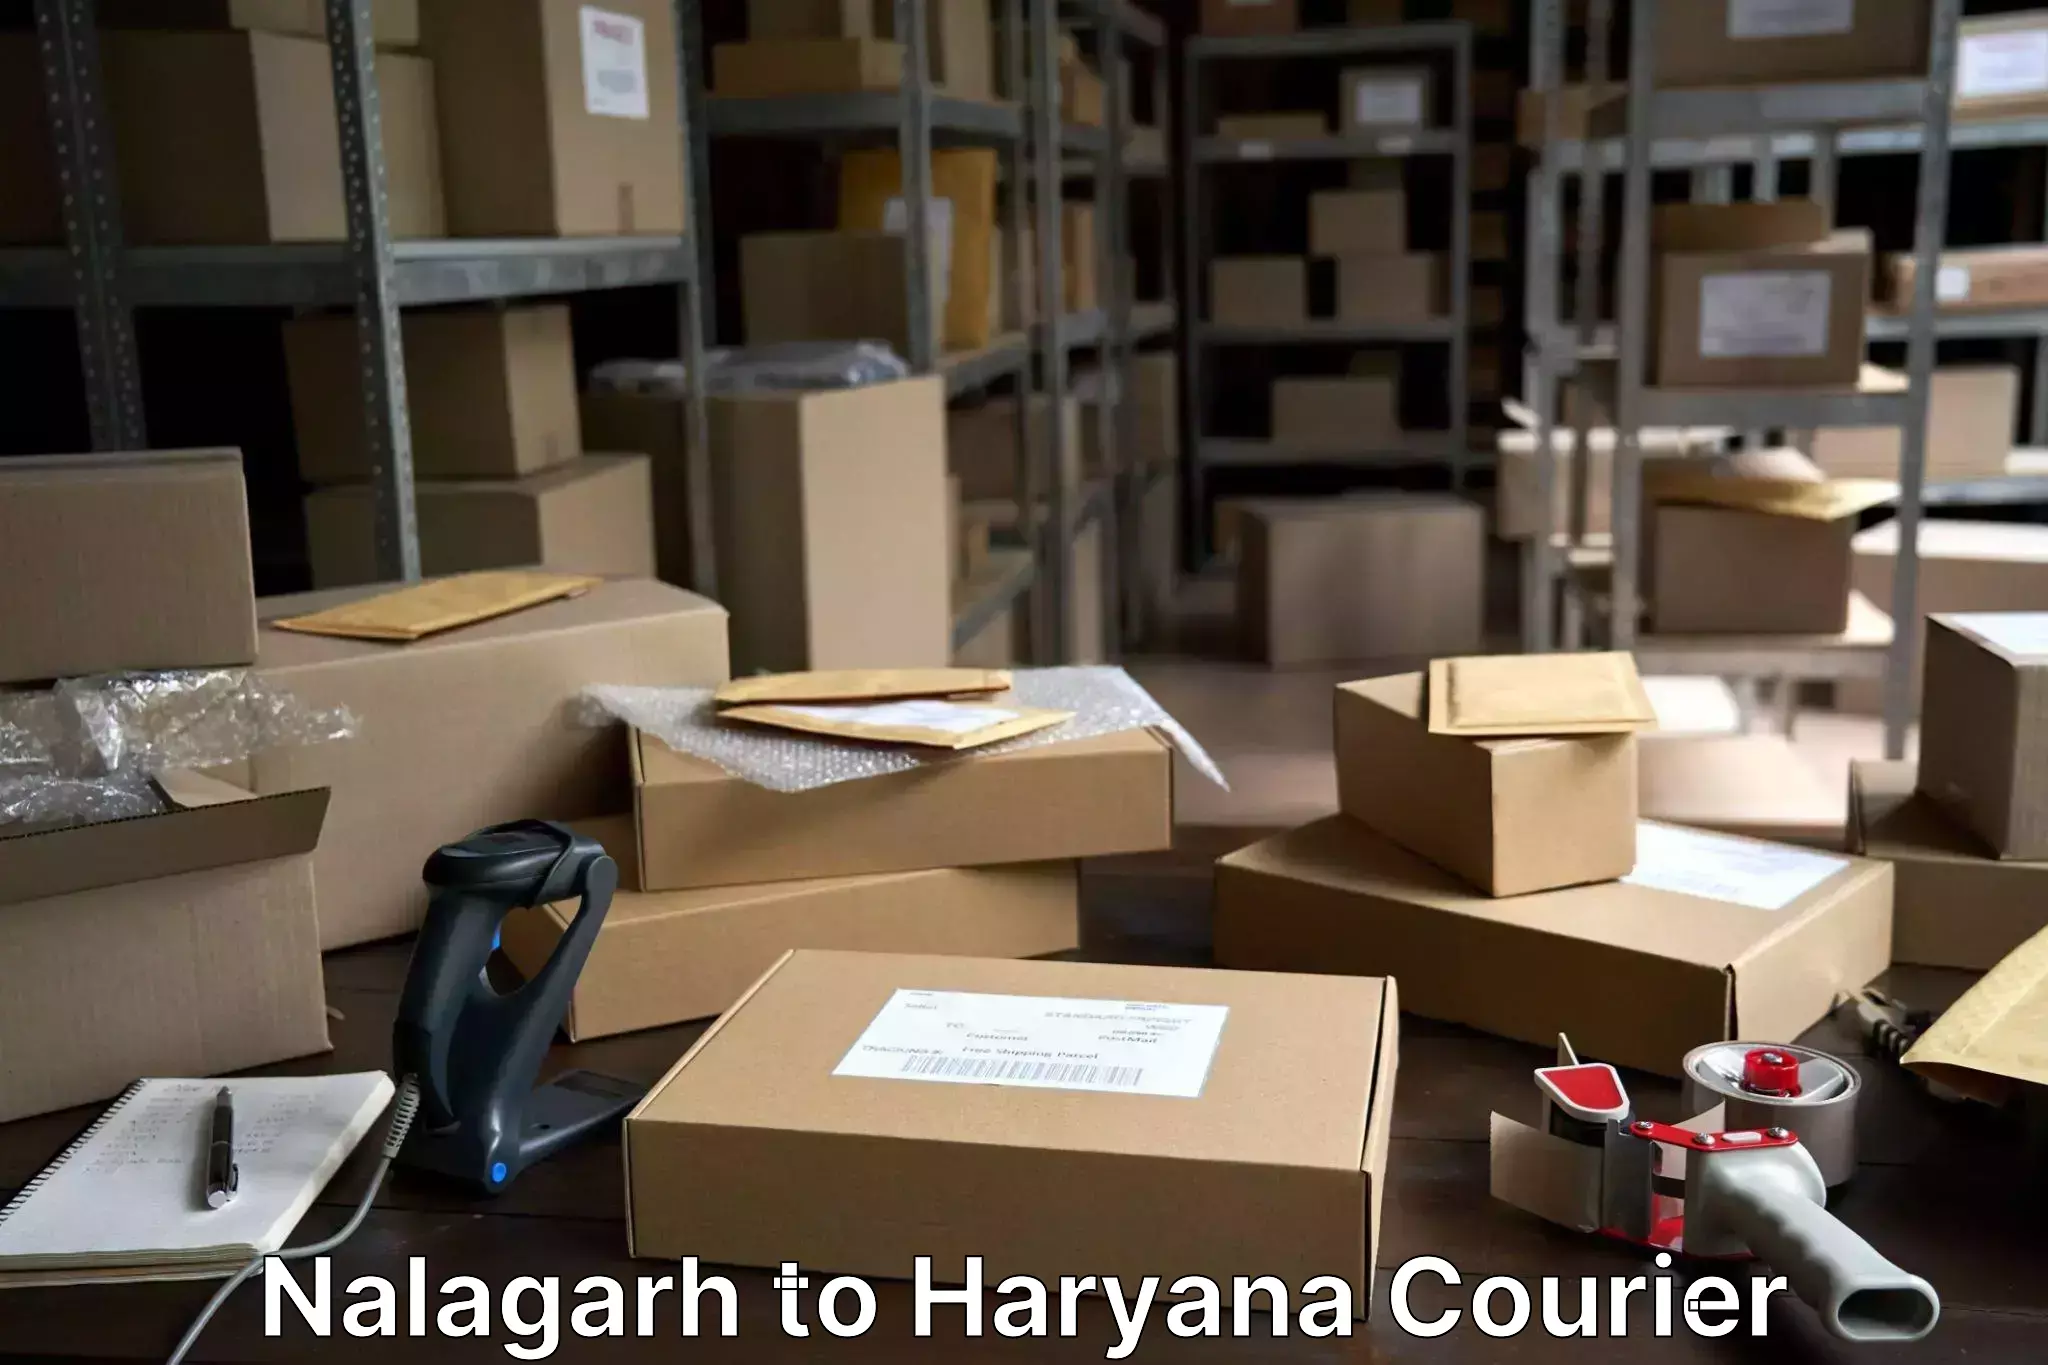 Baggage shipping experience Nalagarh to Taraori